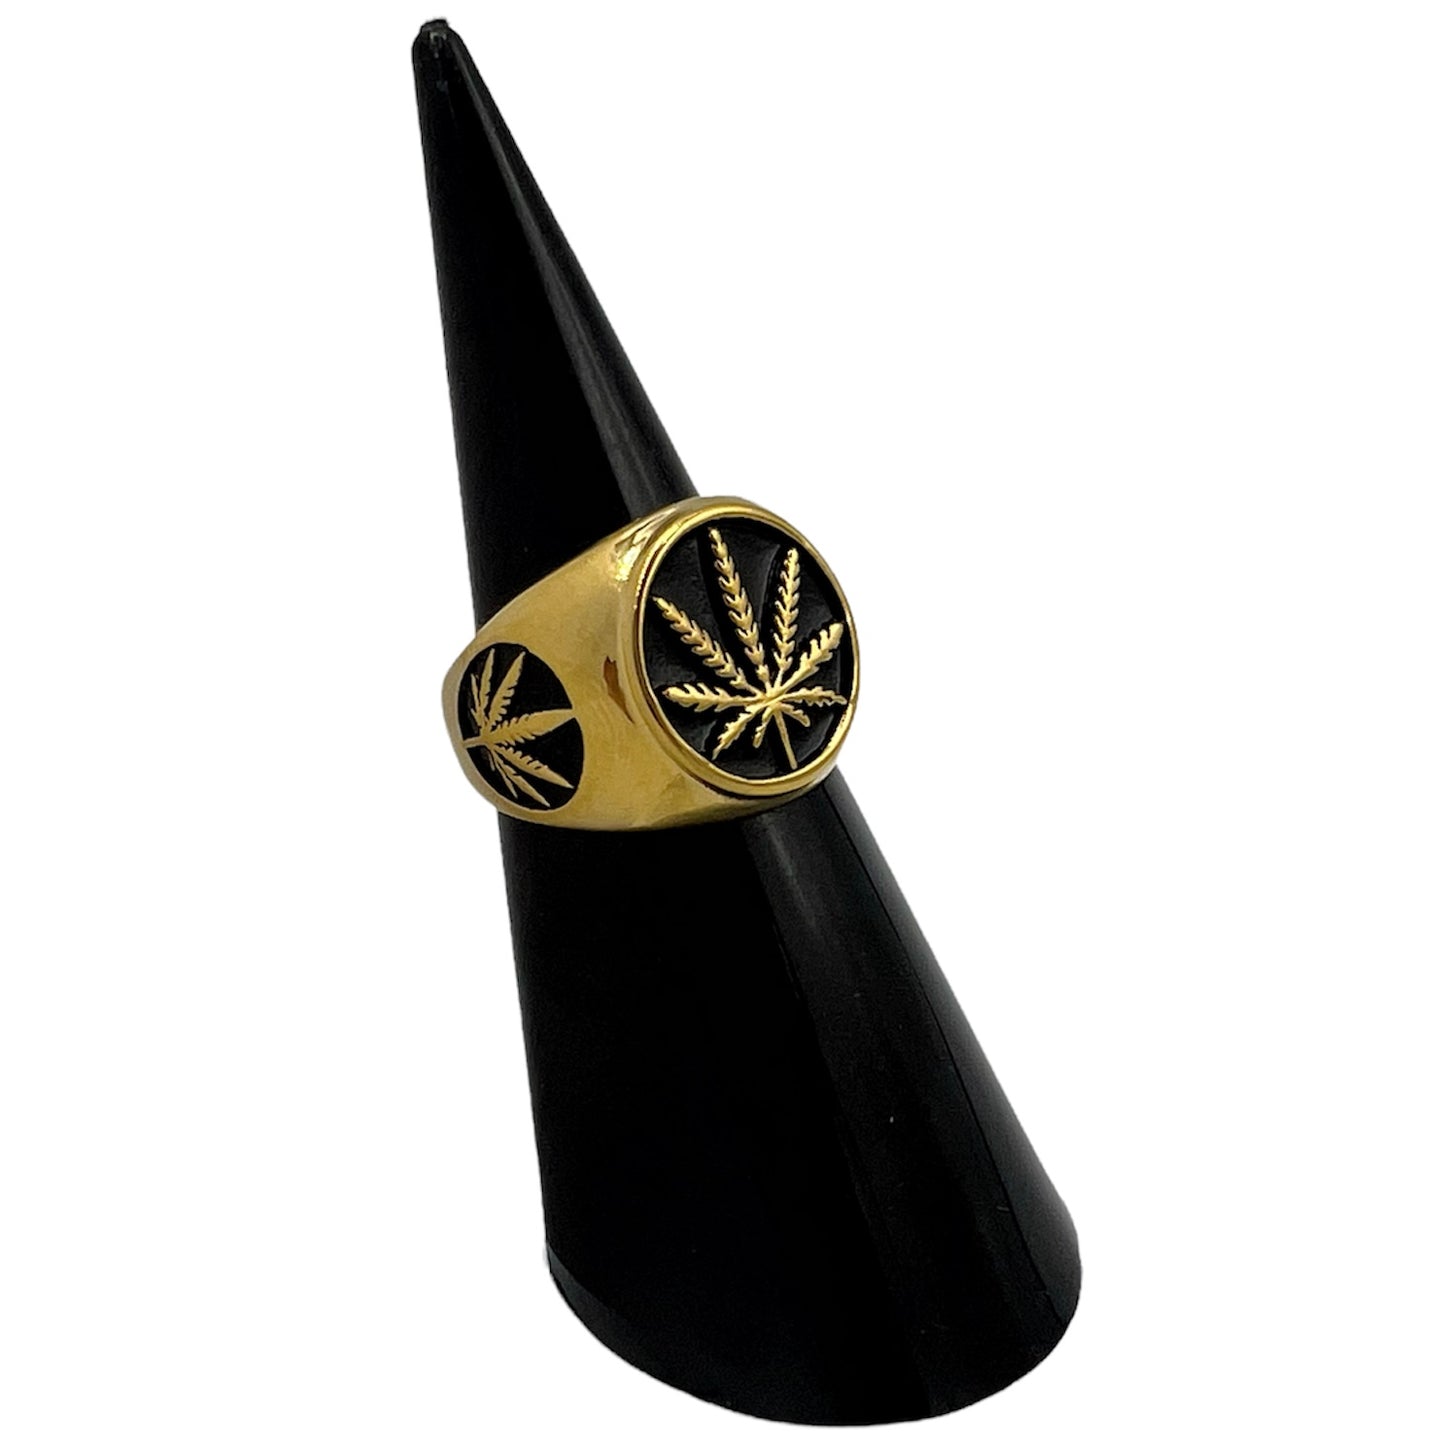 R-39 Stainless Steel Anillo con Hoja de Marihuana/ Marijuana Leaf Ring, Color:Gold&Black, Seleccione el Size en la Parte de Abajo donde dice Size